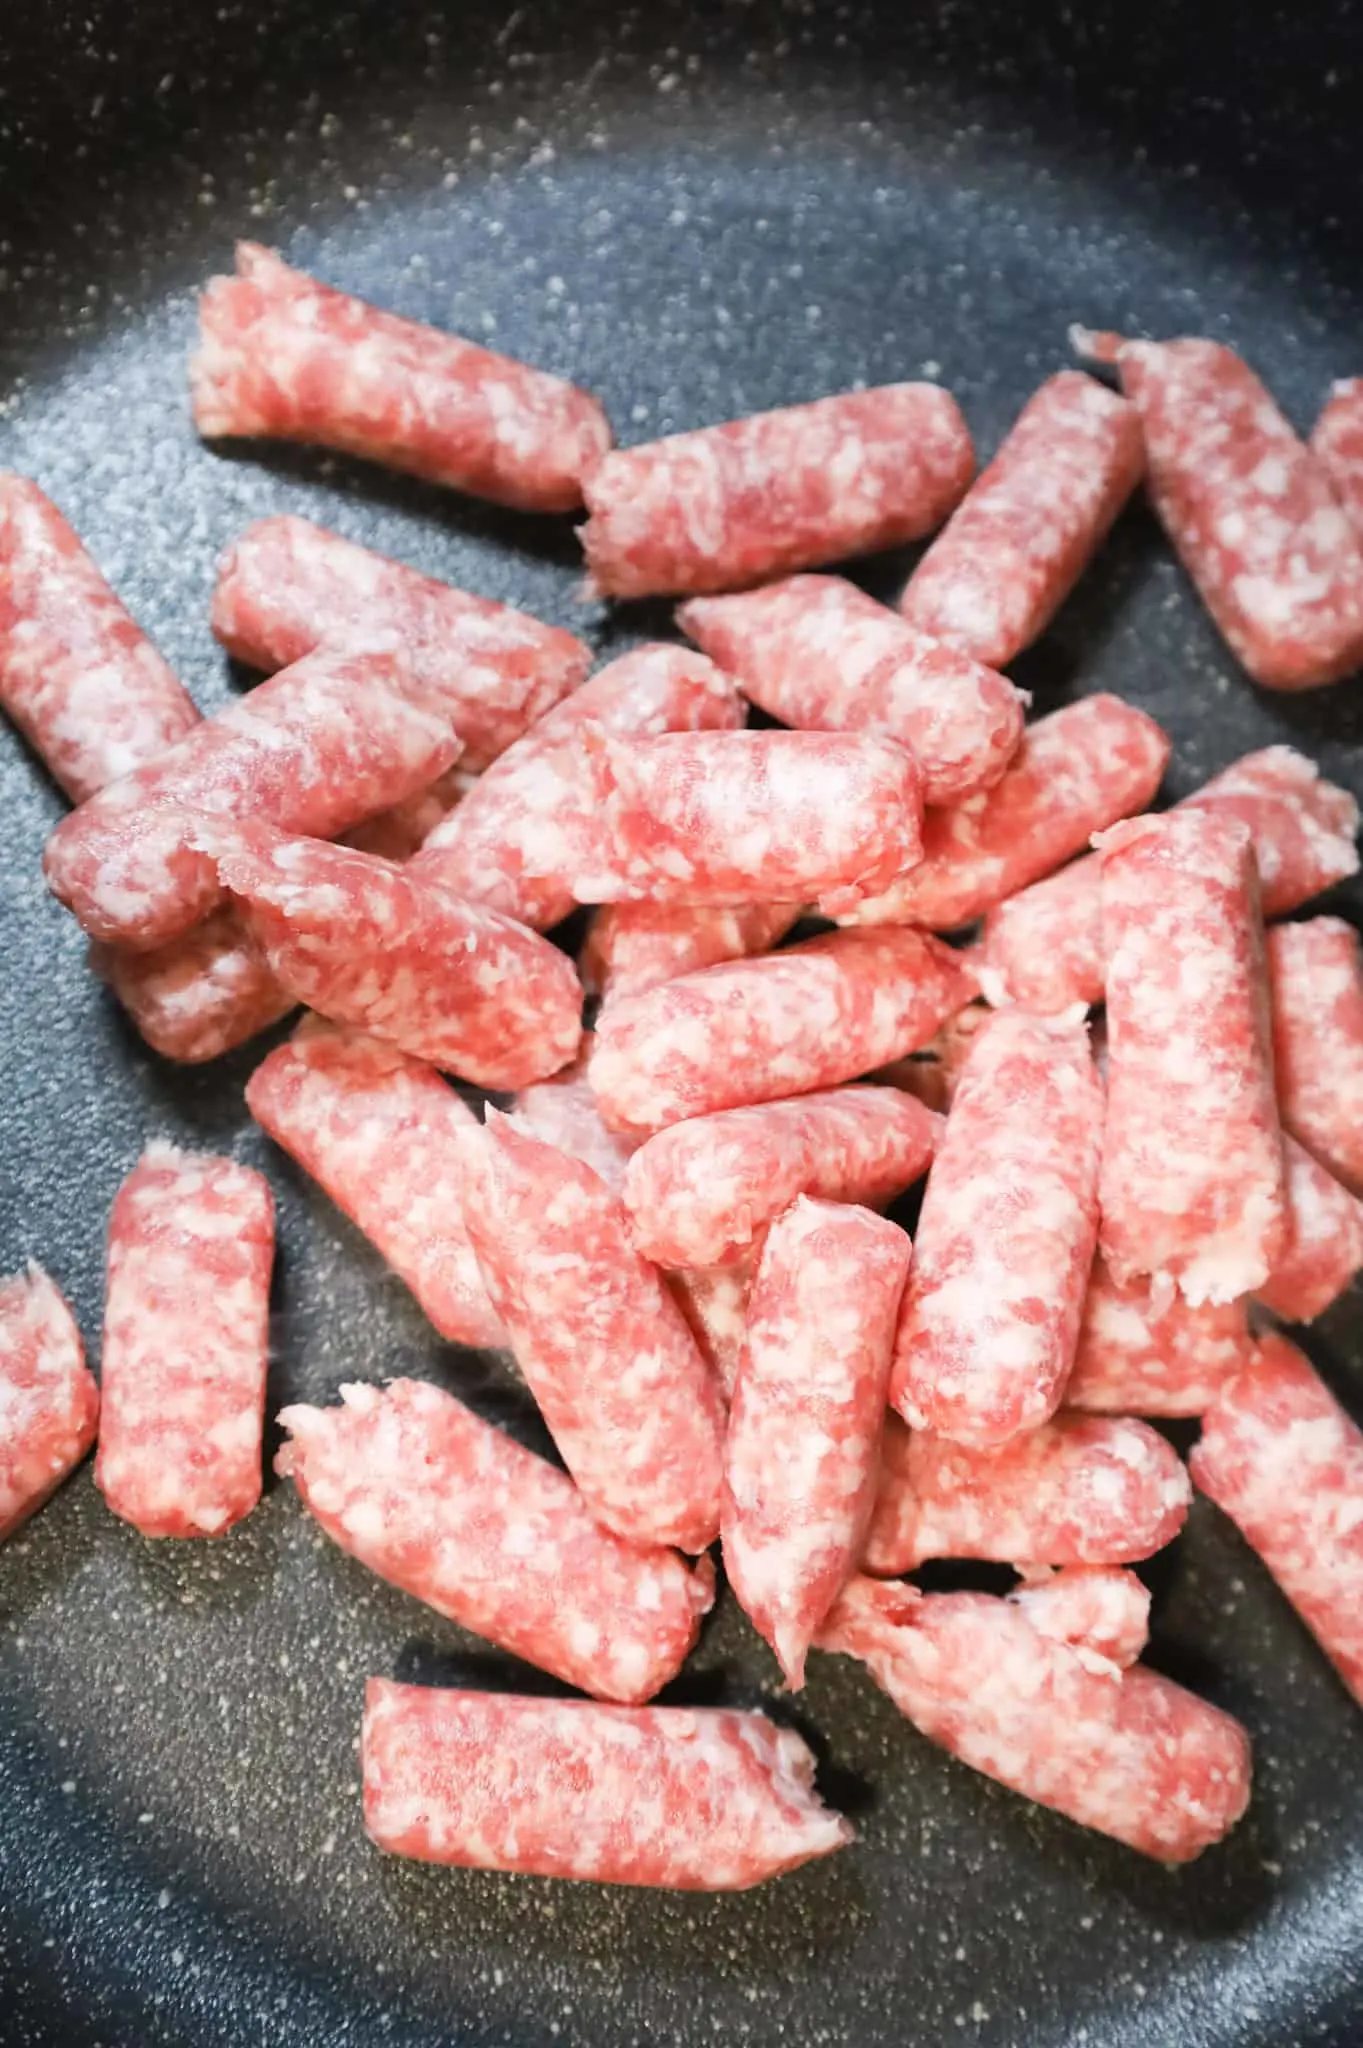 pork sausage meat in a skillet